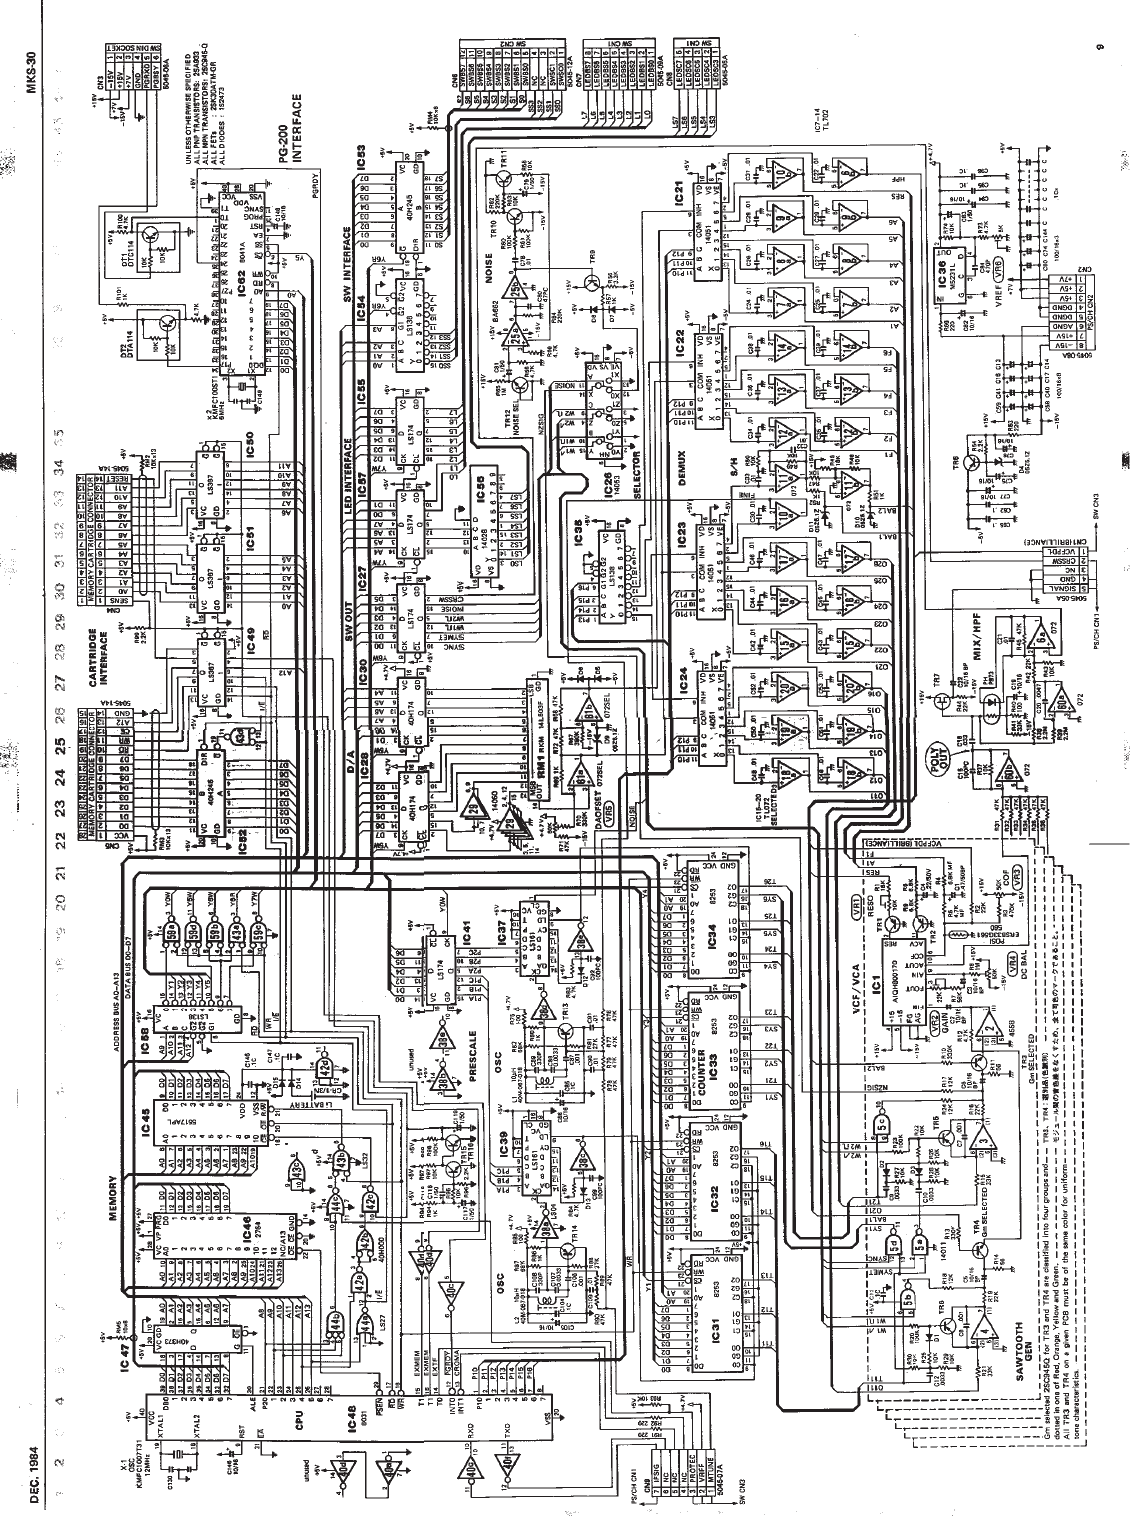 Page 2 of 4 - MKS-30 Schematics Roland